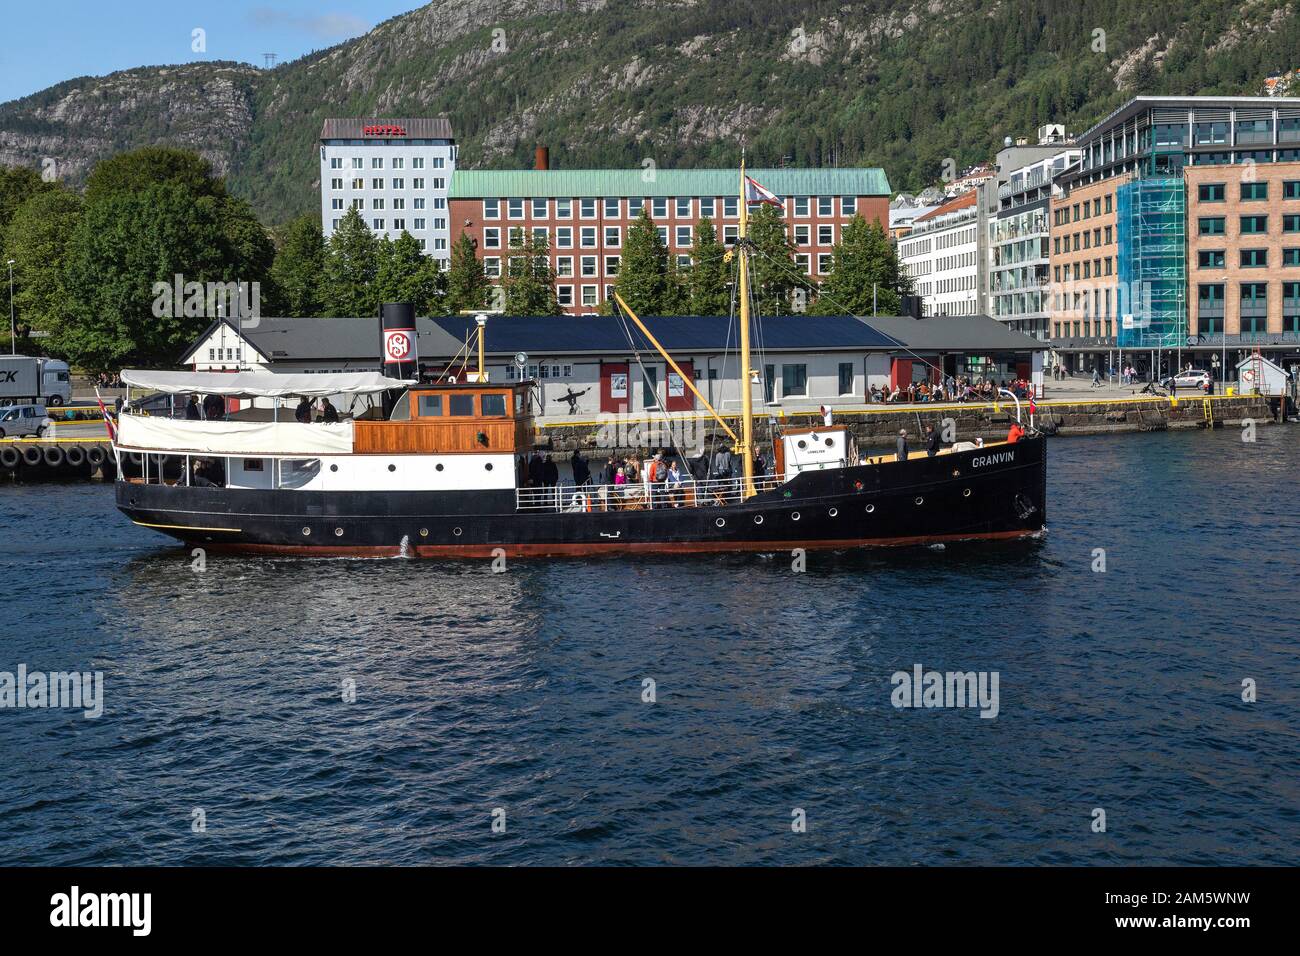 Nave a vapore per passeggeri veterani Granvin, costruita nel 1931. Arrivo al porto di Bergen, Norvegia. Foto Stock